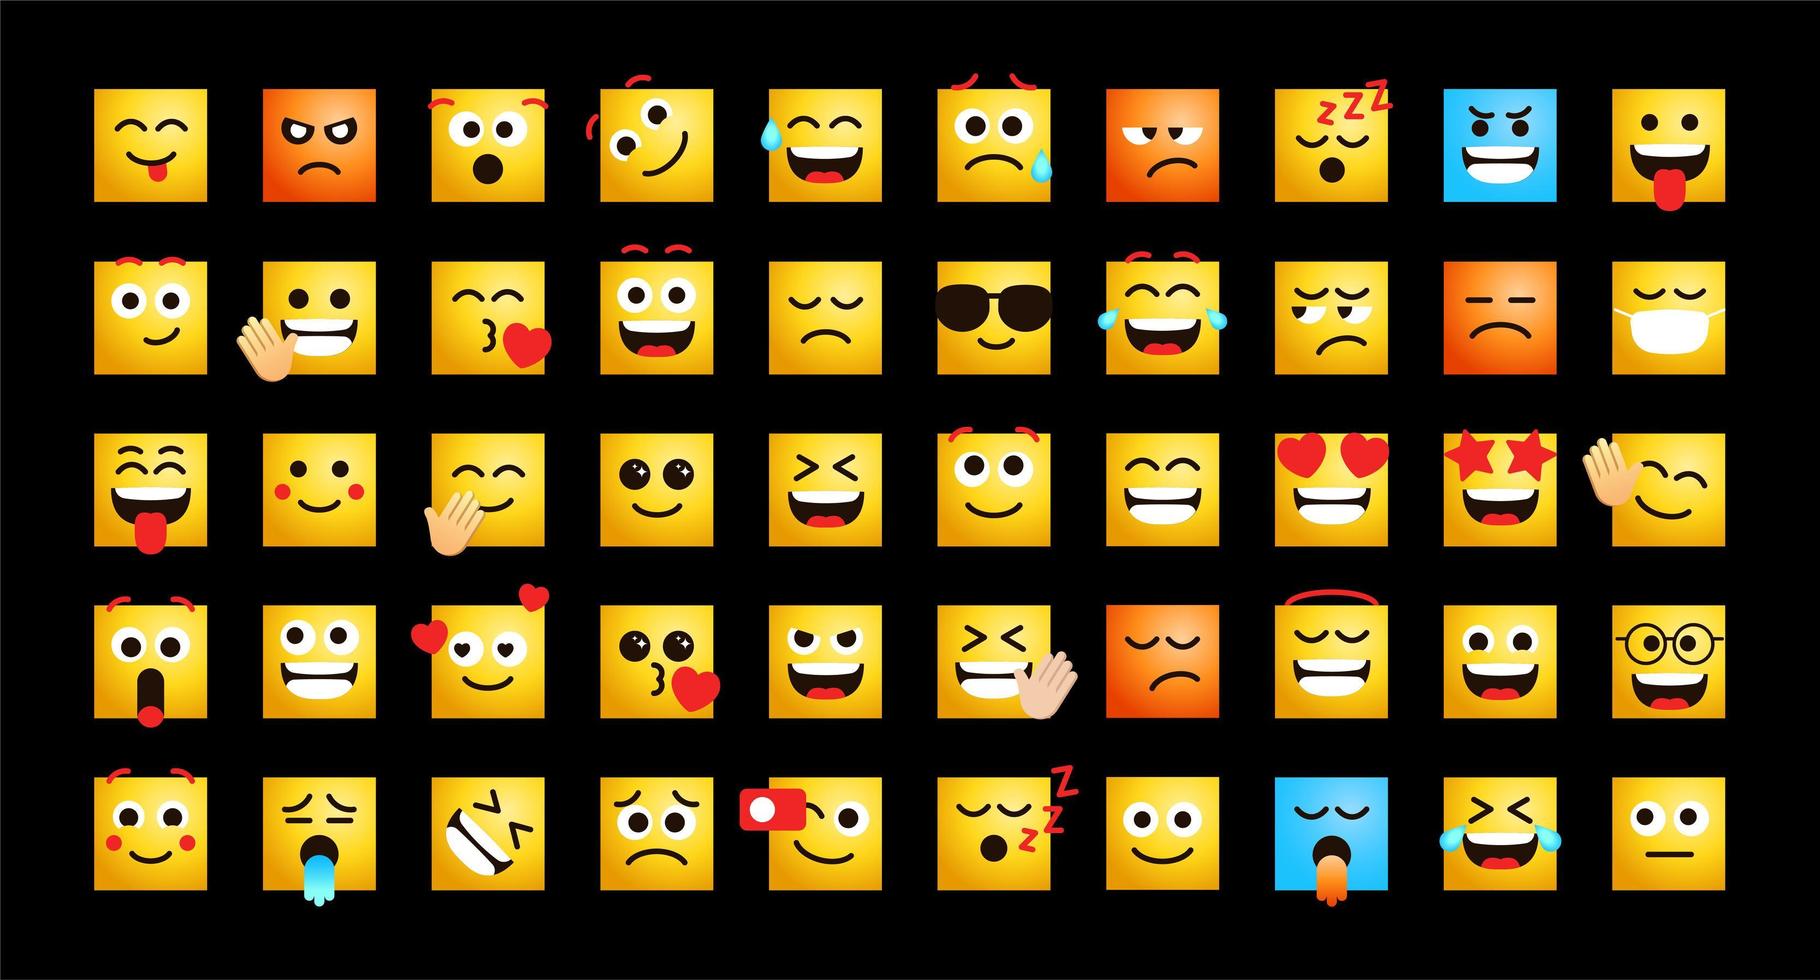 lindos emoticonos en forma de caras cuadradas conjunto de vectores para publicación y reacción en medios sociales. emoji divertido con expresiones faciales. ilustración vectorial